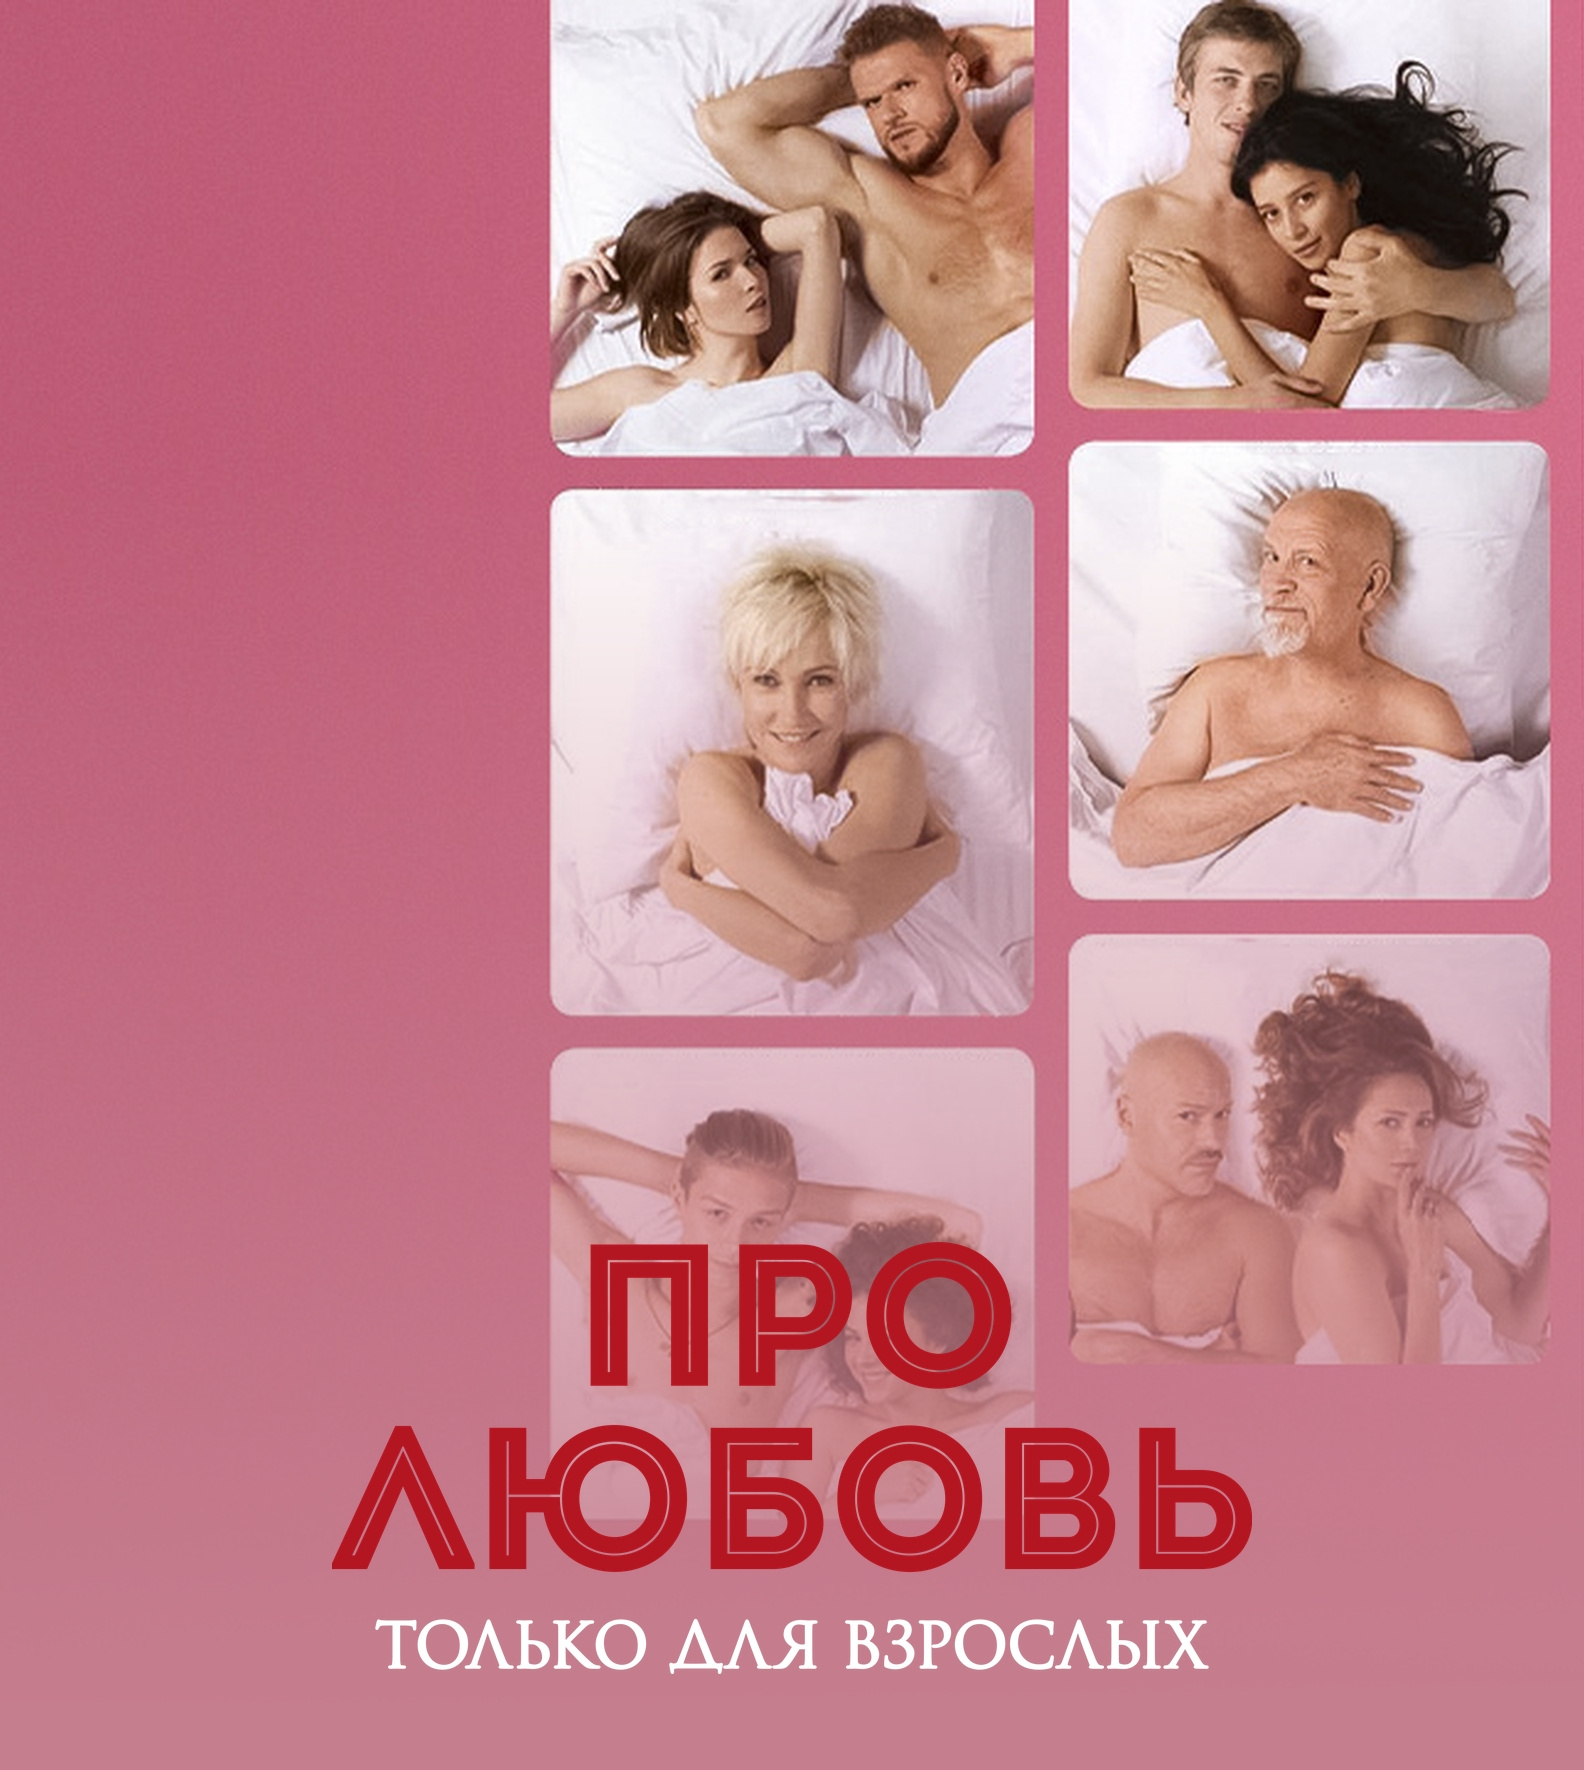 Секс про любовь: смотреть русское порно видео онлайн